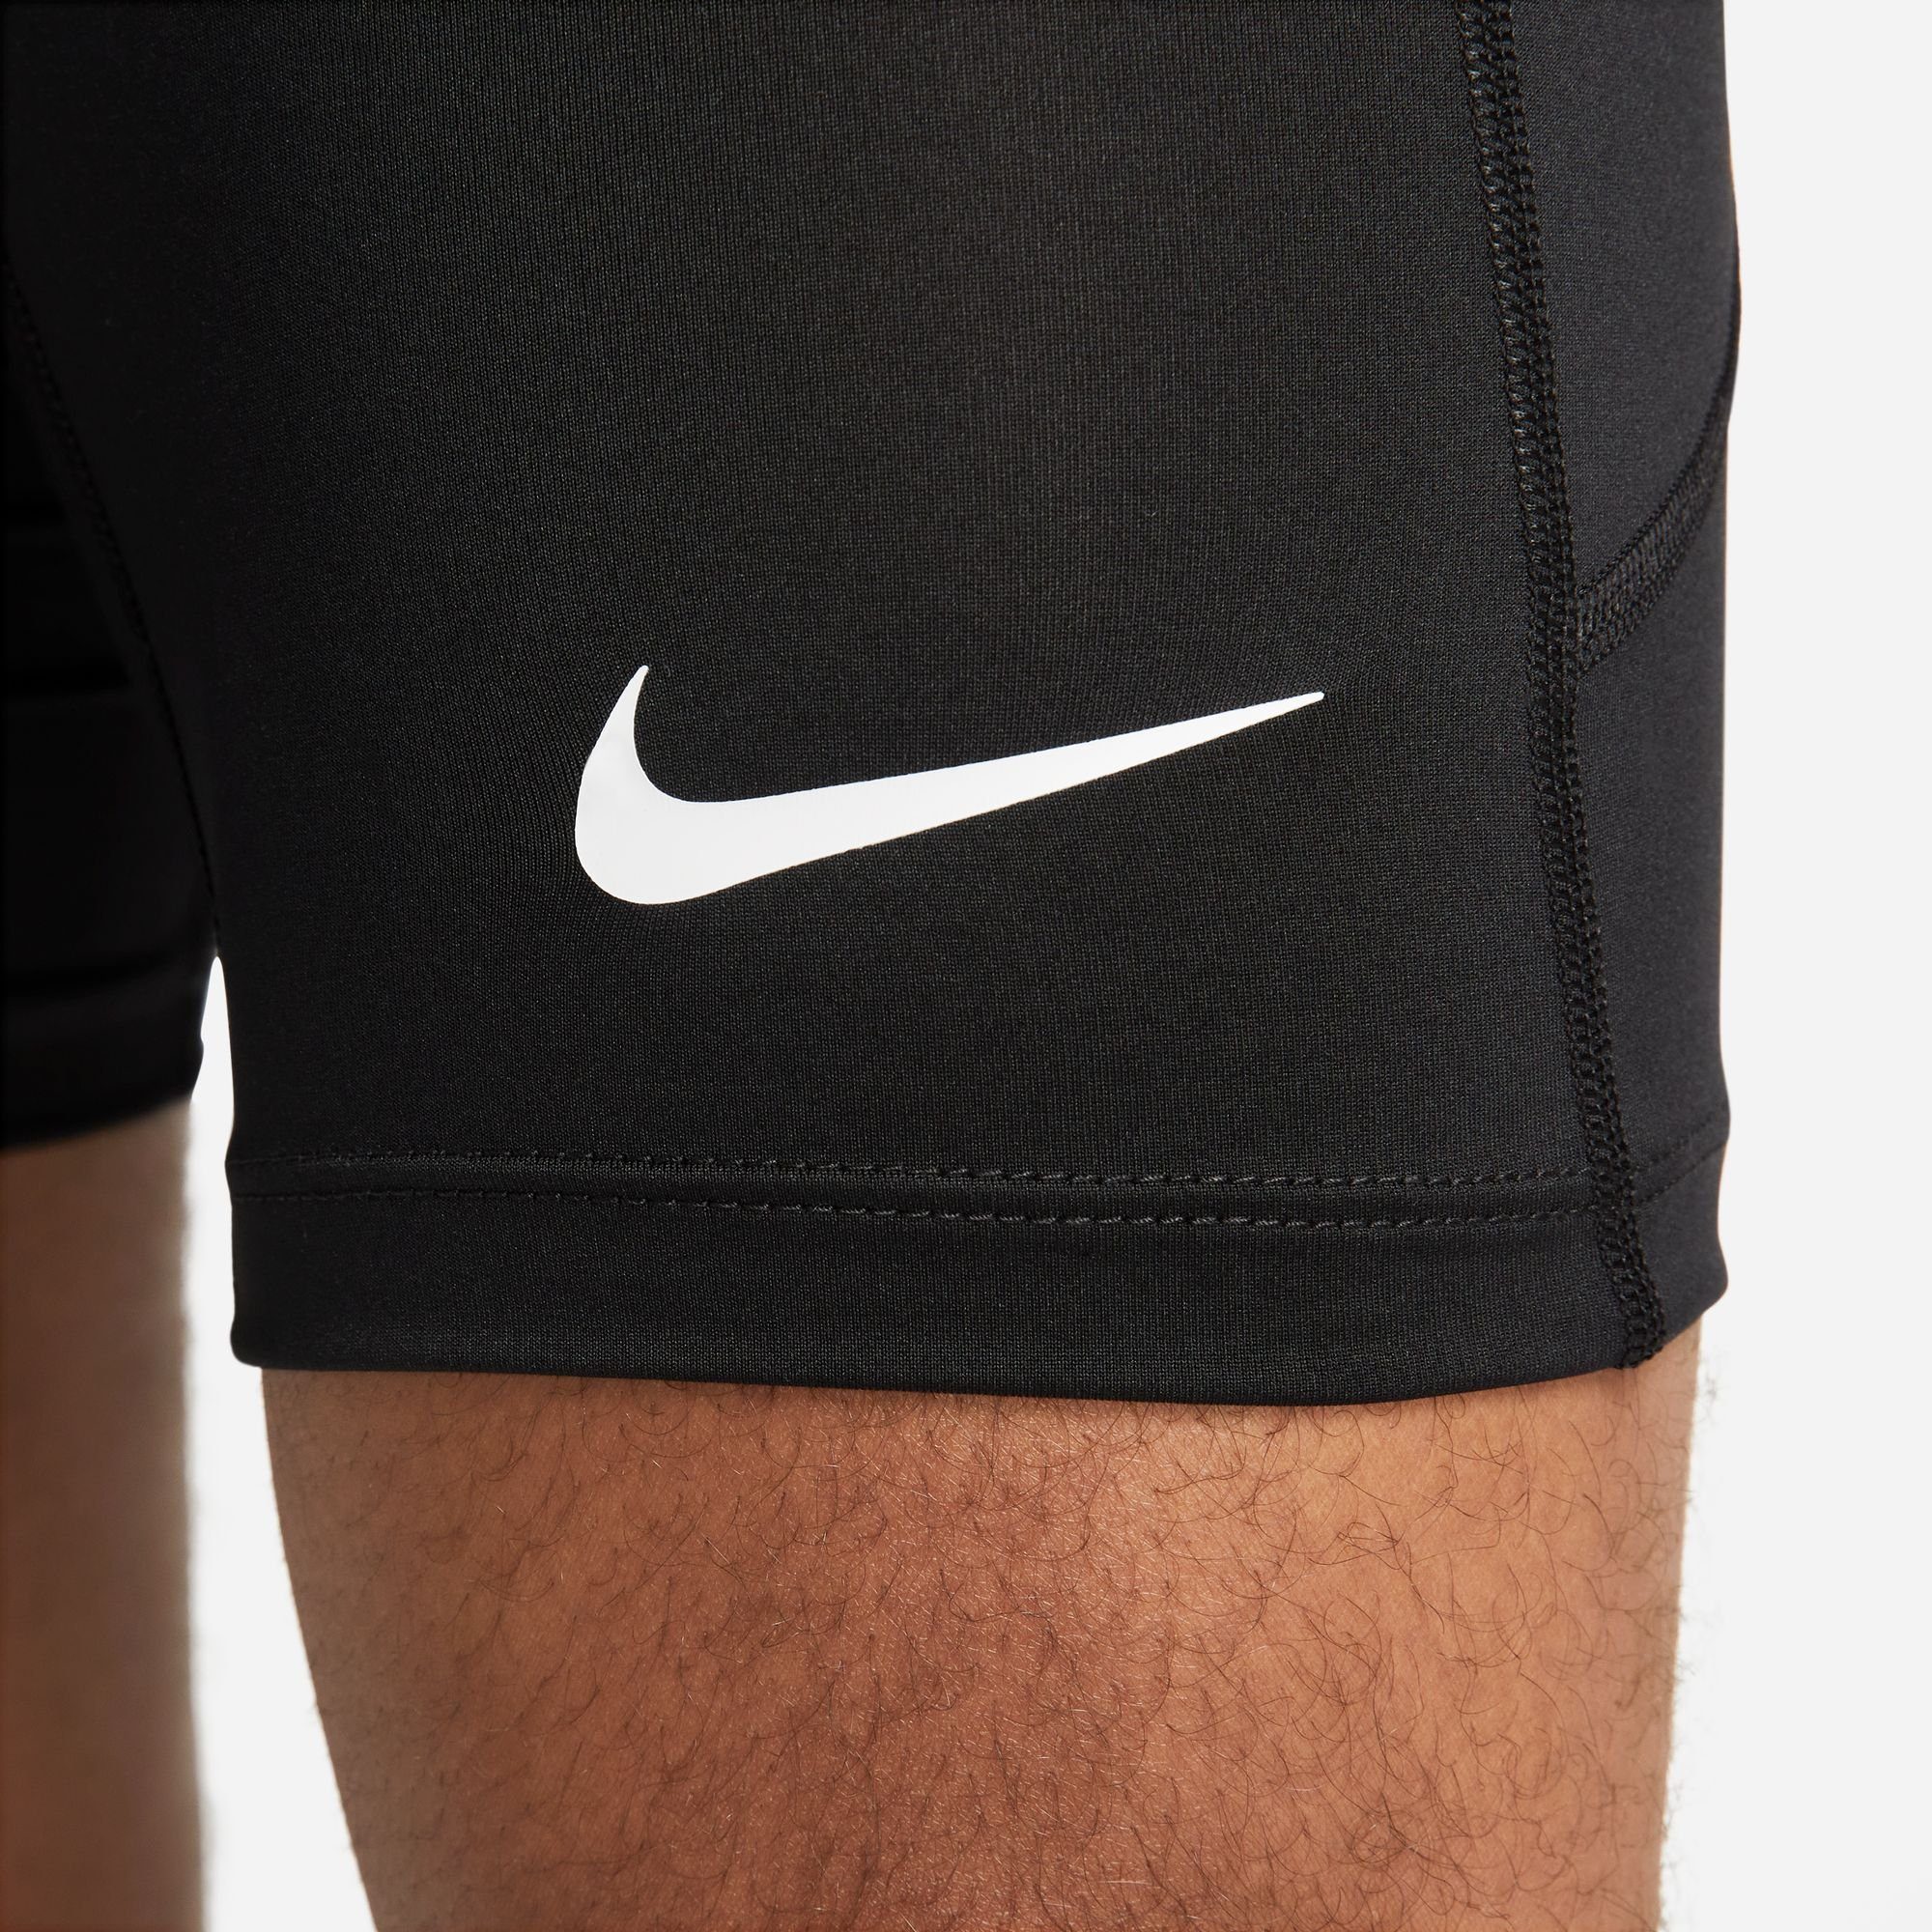 SHORTS DRI-FIT Trainingstights Nike PRO MEN'S "